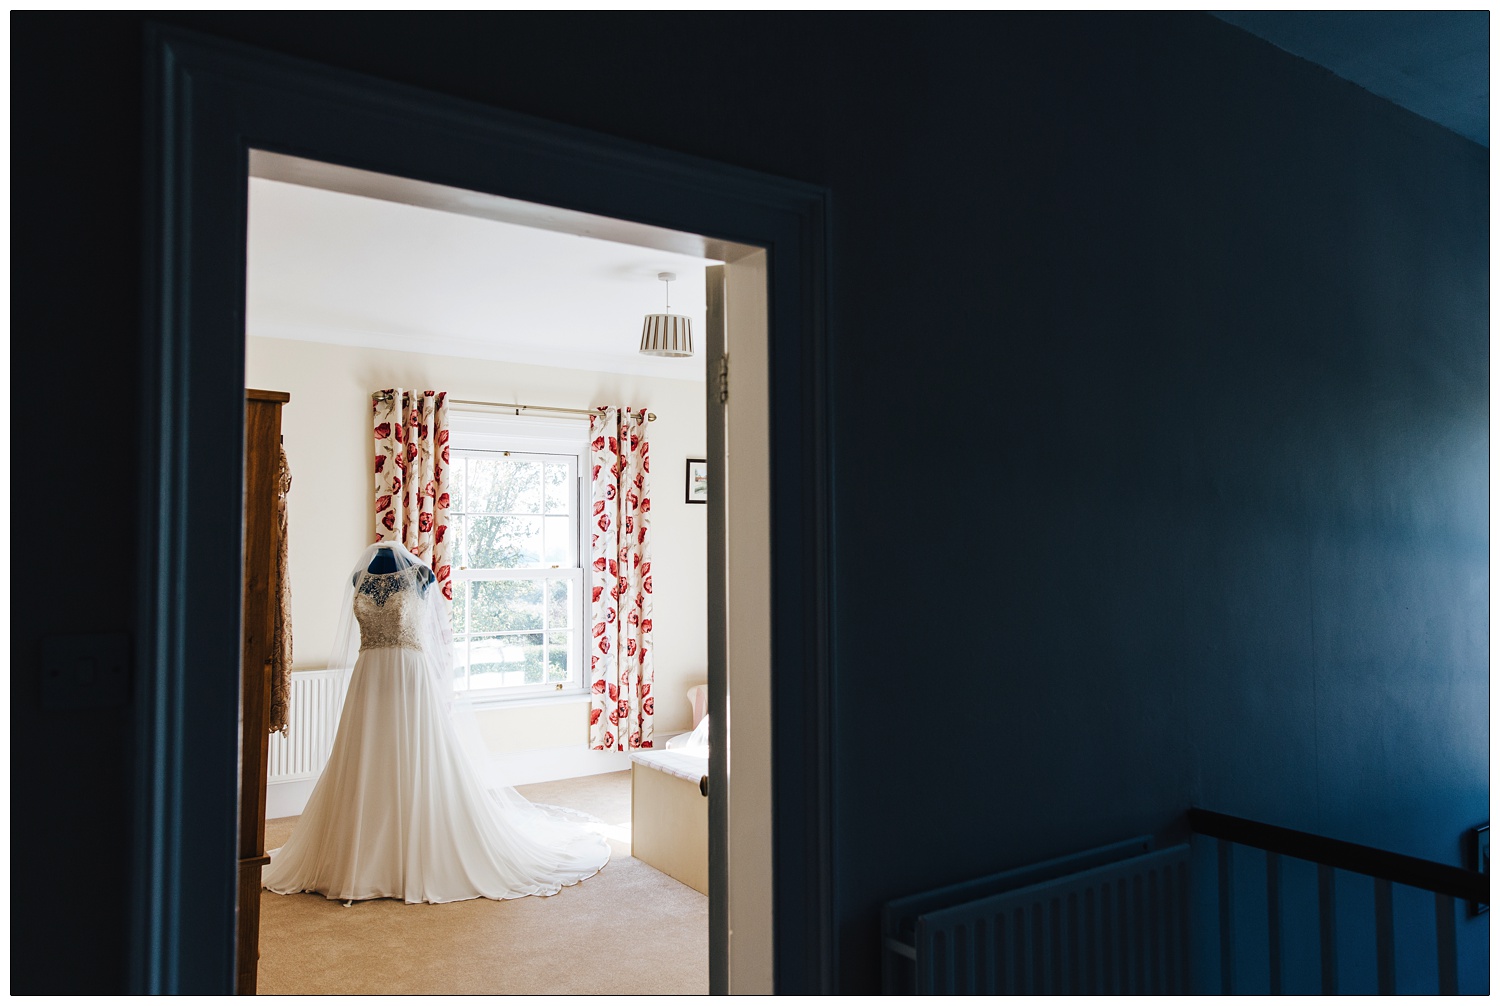 Wedding dress on a mannequin in a bedroom seen through a door.